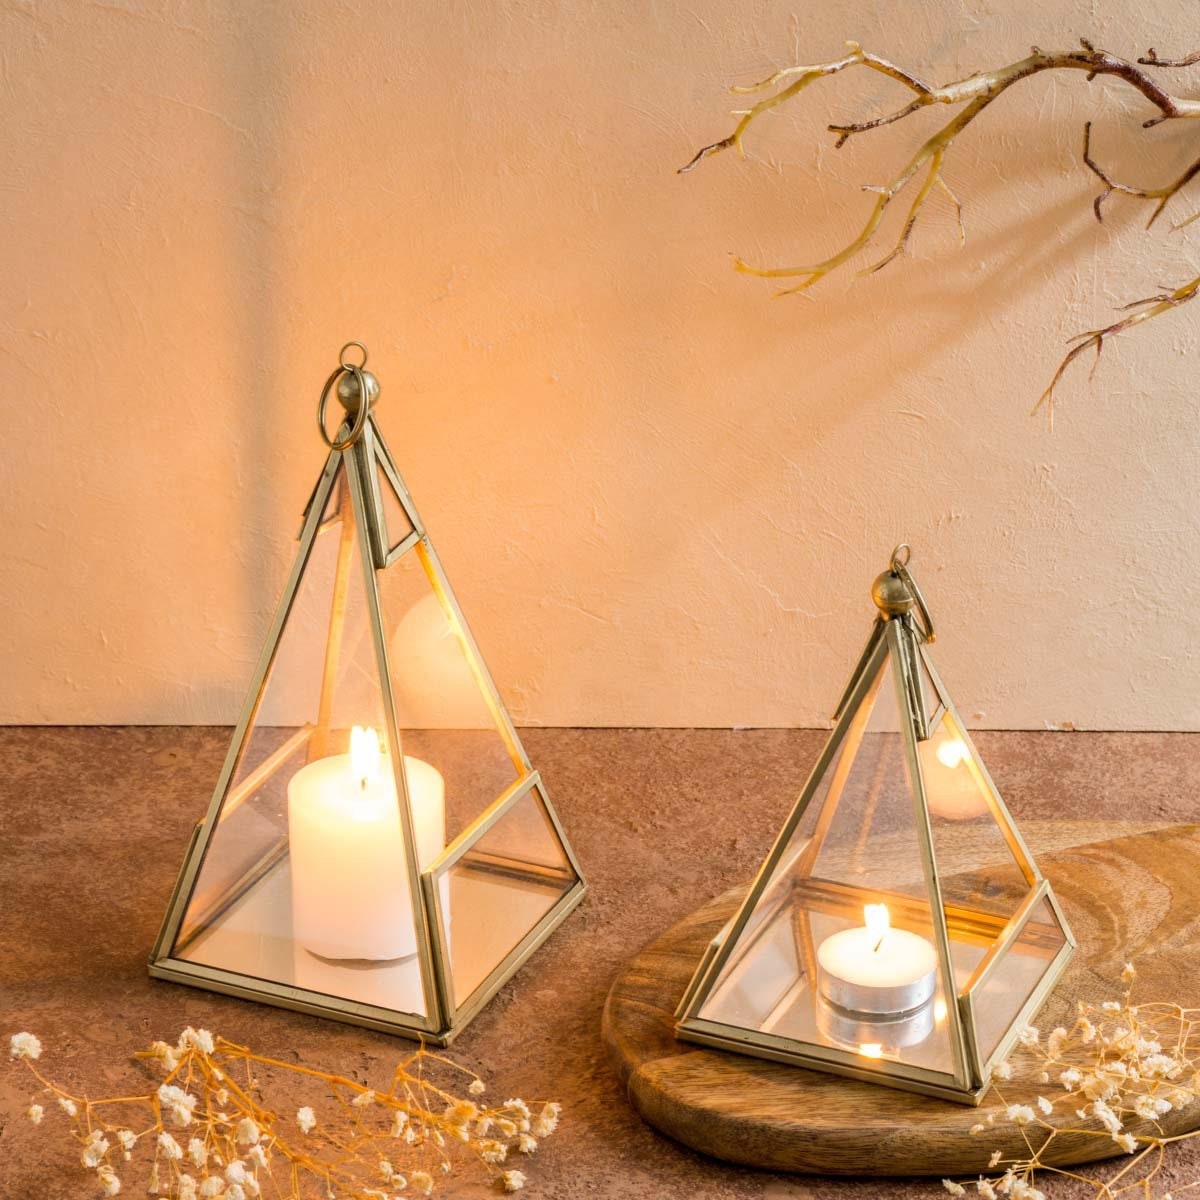 Portacandele a forma piramidale / Decorazione festosa ed elegante da tavolo  in vetro per lumini o lucine / Lanterna a candela con base a specchio -   Italia